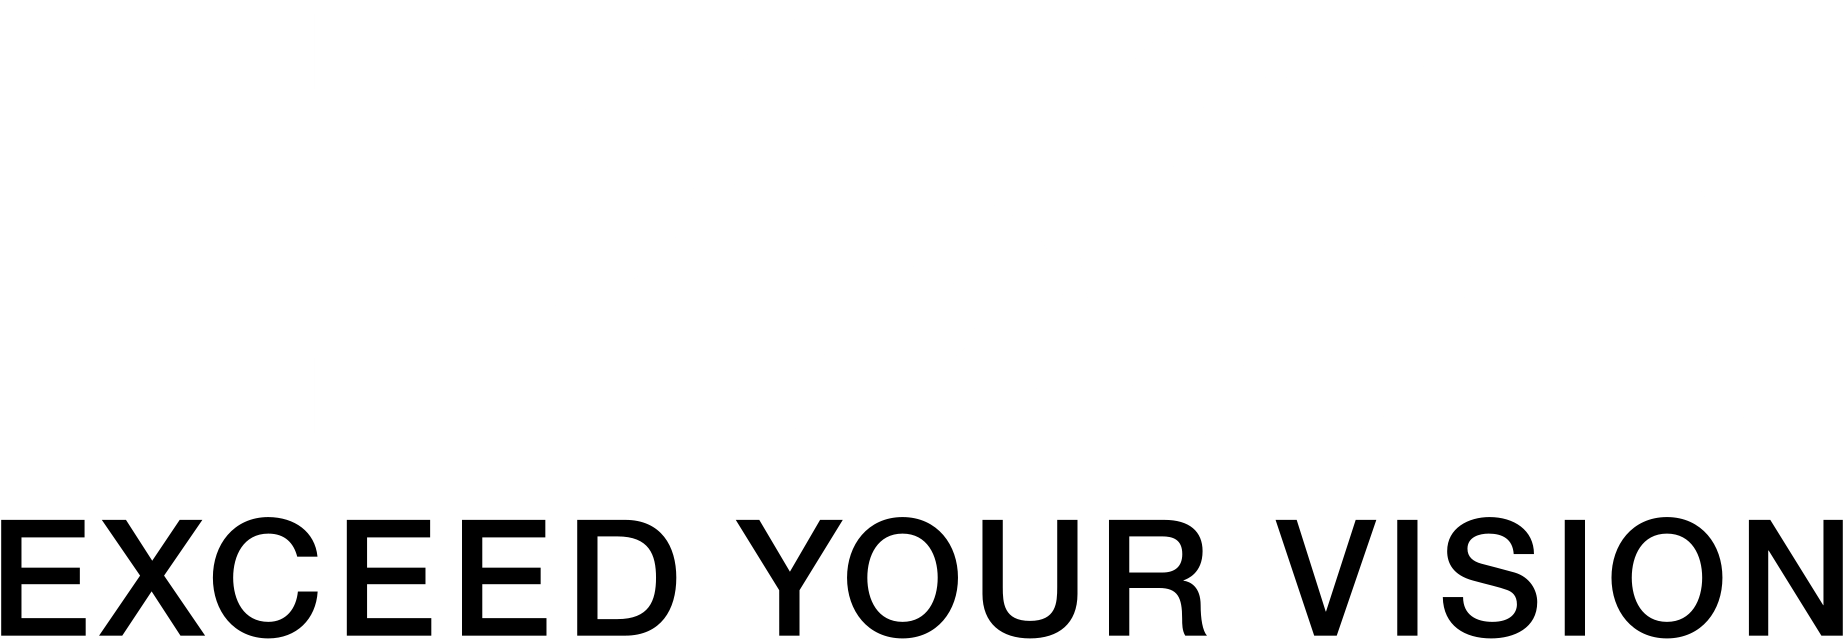 Epson Logo Black And White , 